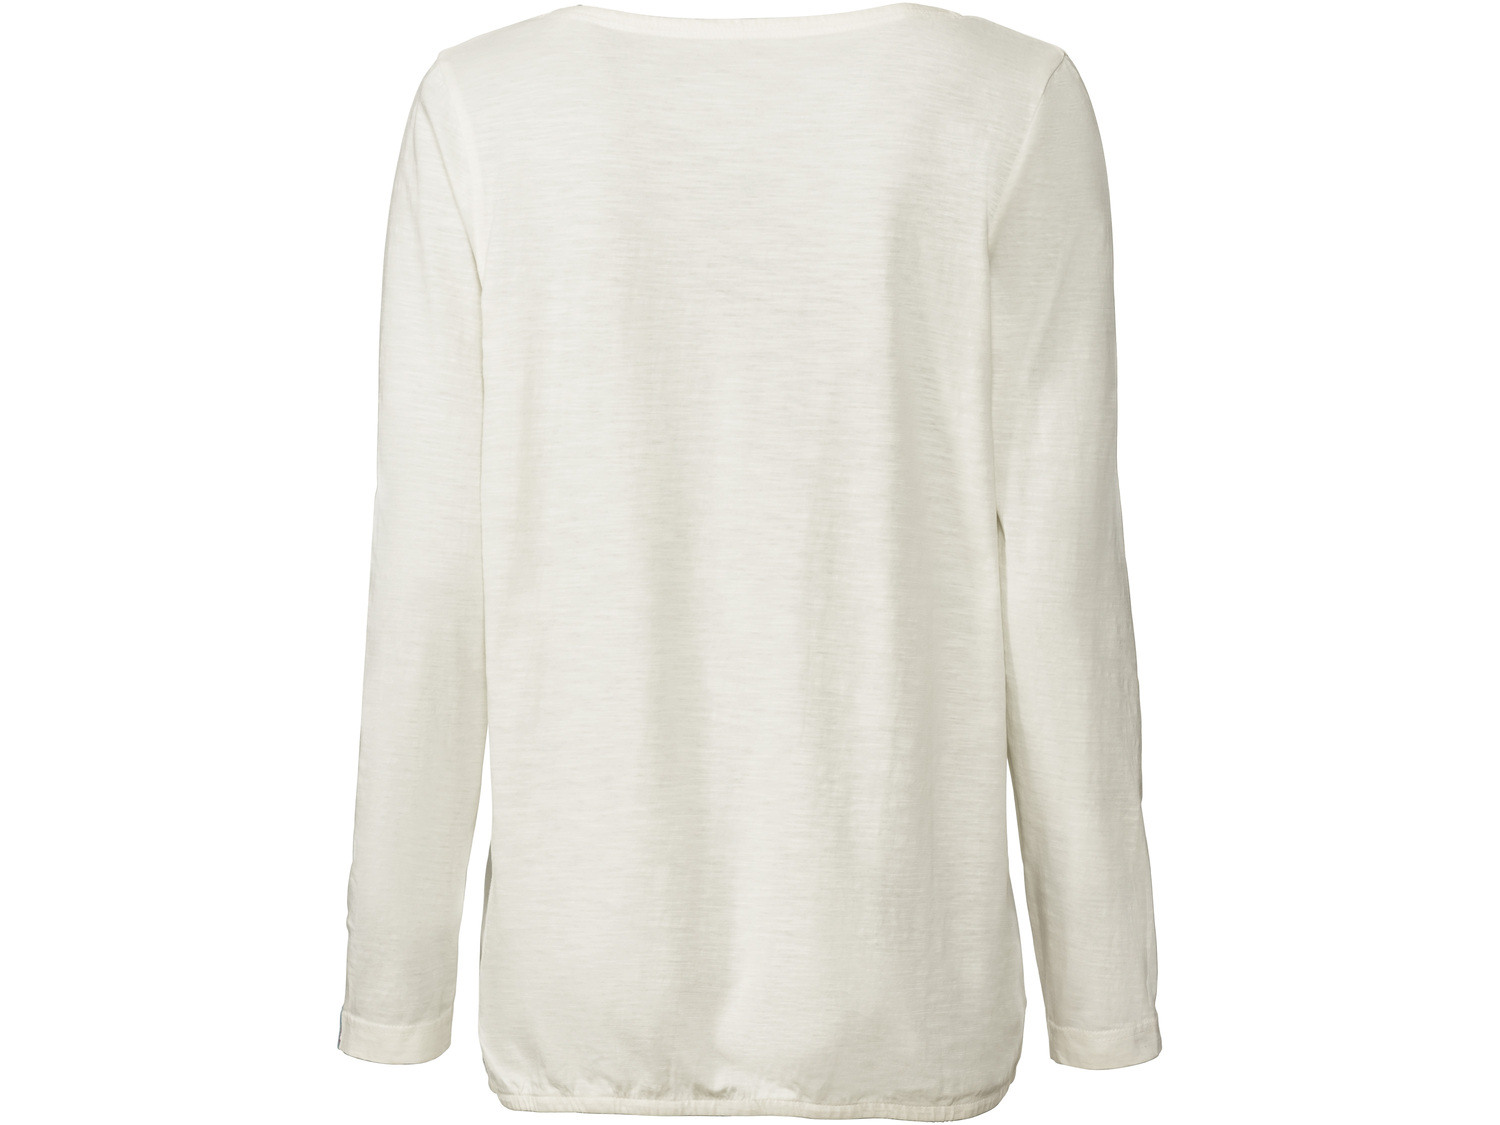 Bluzka damska z bawełny Esmara, cena 19,99 PLN 
- 100% bawełny
- modny efekt sprania
- ...